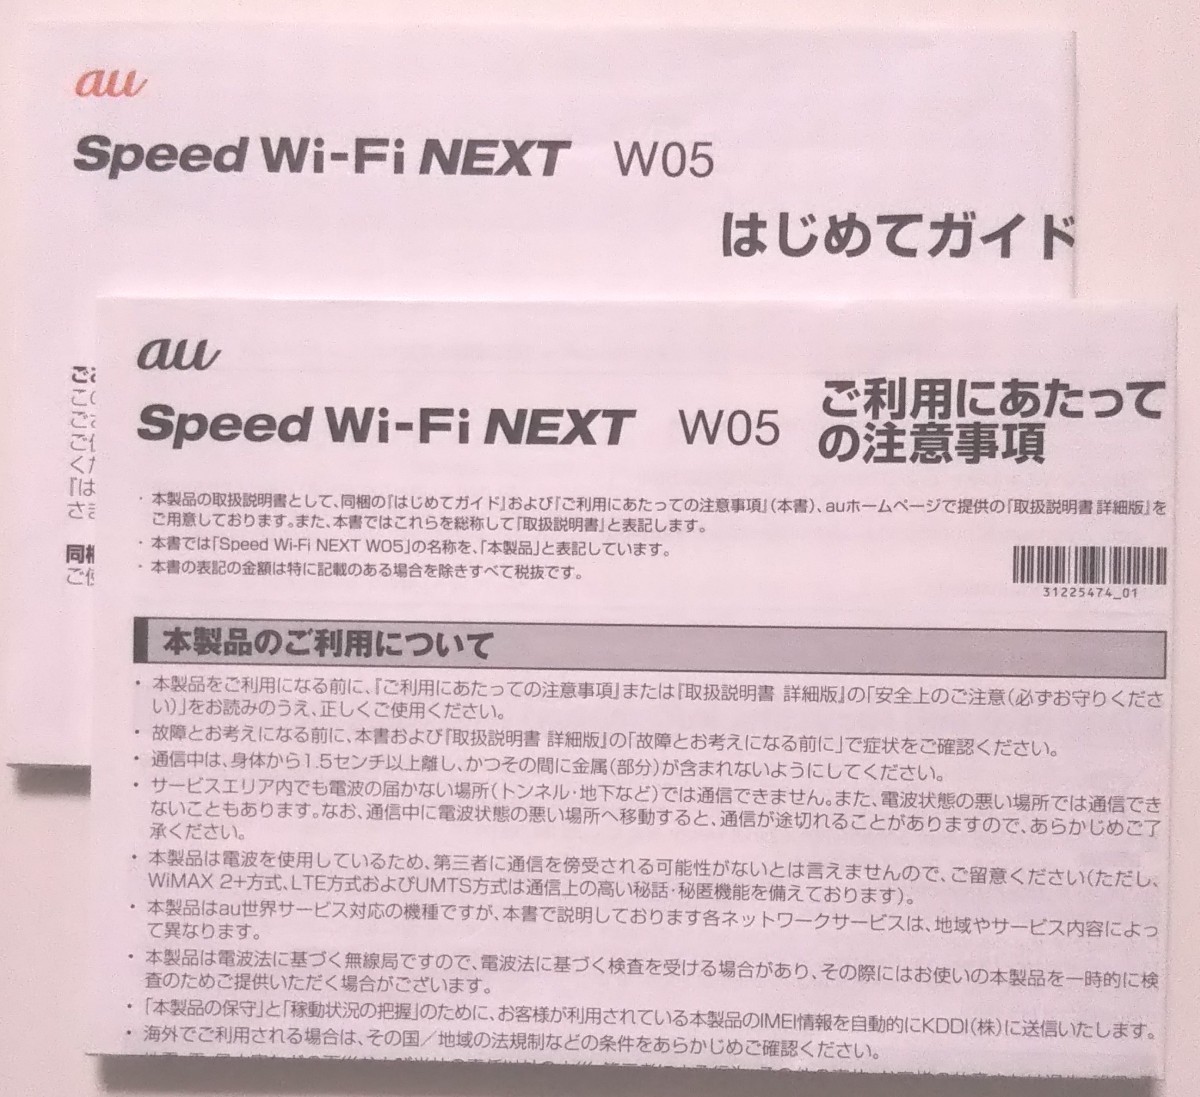 WiMAX2+ Speed Wi-Fi NEXT W05 au ホワイト